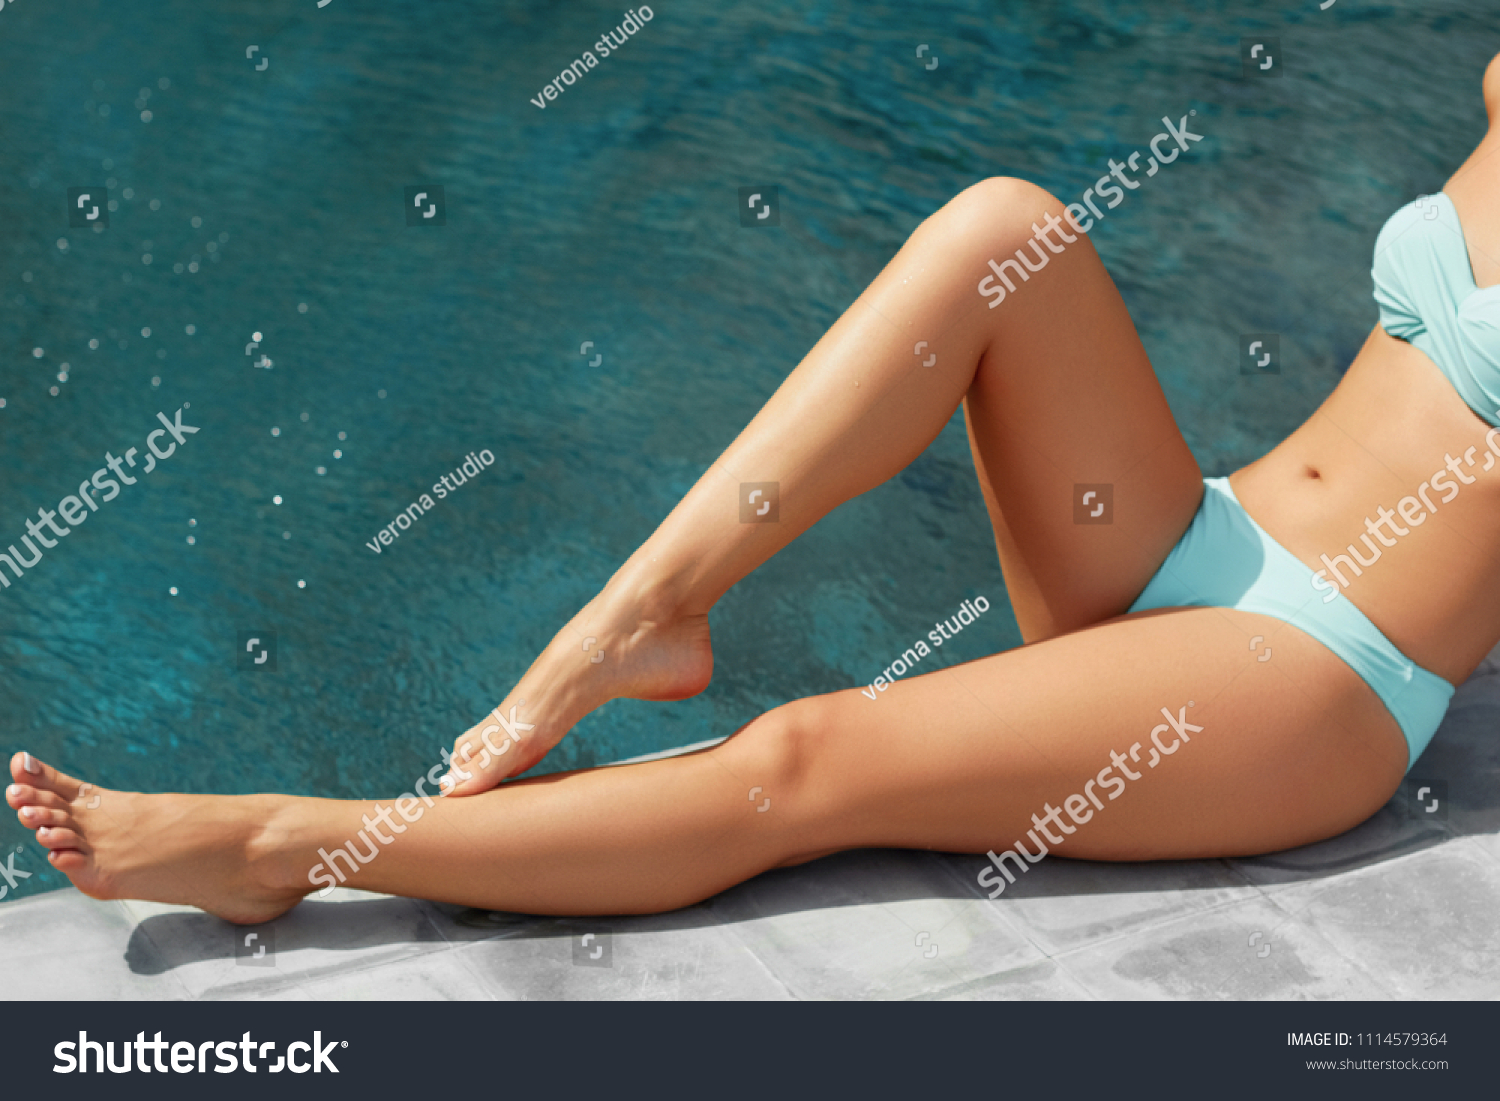 Sexy Suntan Bikin Woman Legs Relaxing Stock Photo 1114579364 Shutterstock